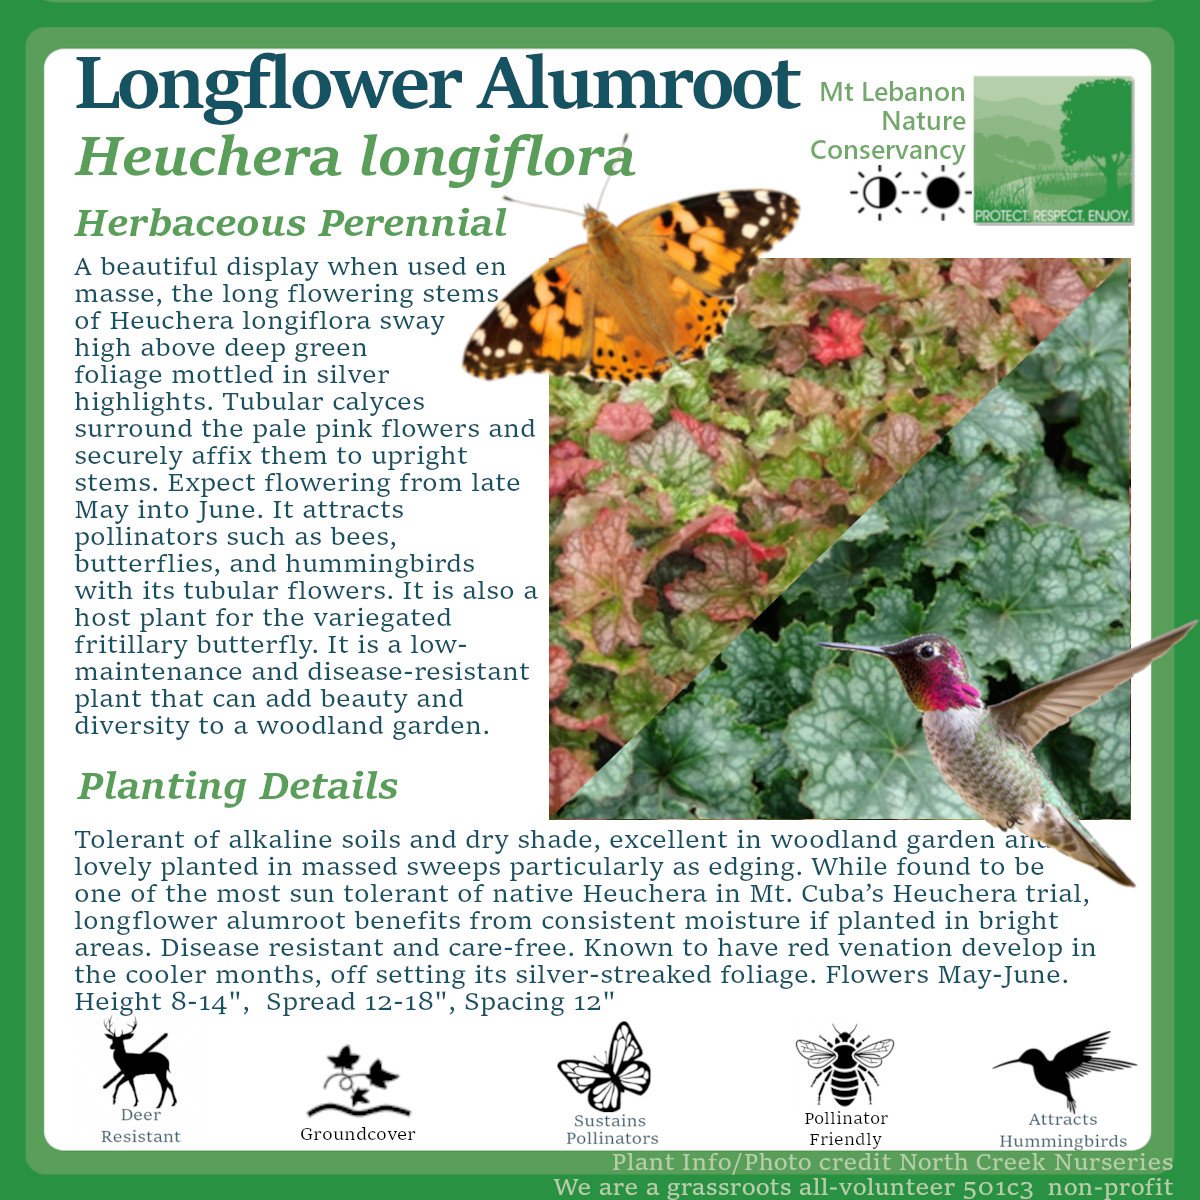 LongflowerAlumroot_Heuchera longiflora.jpg